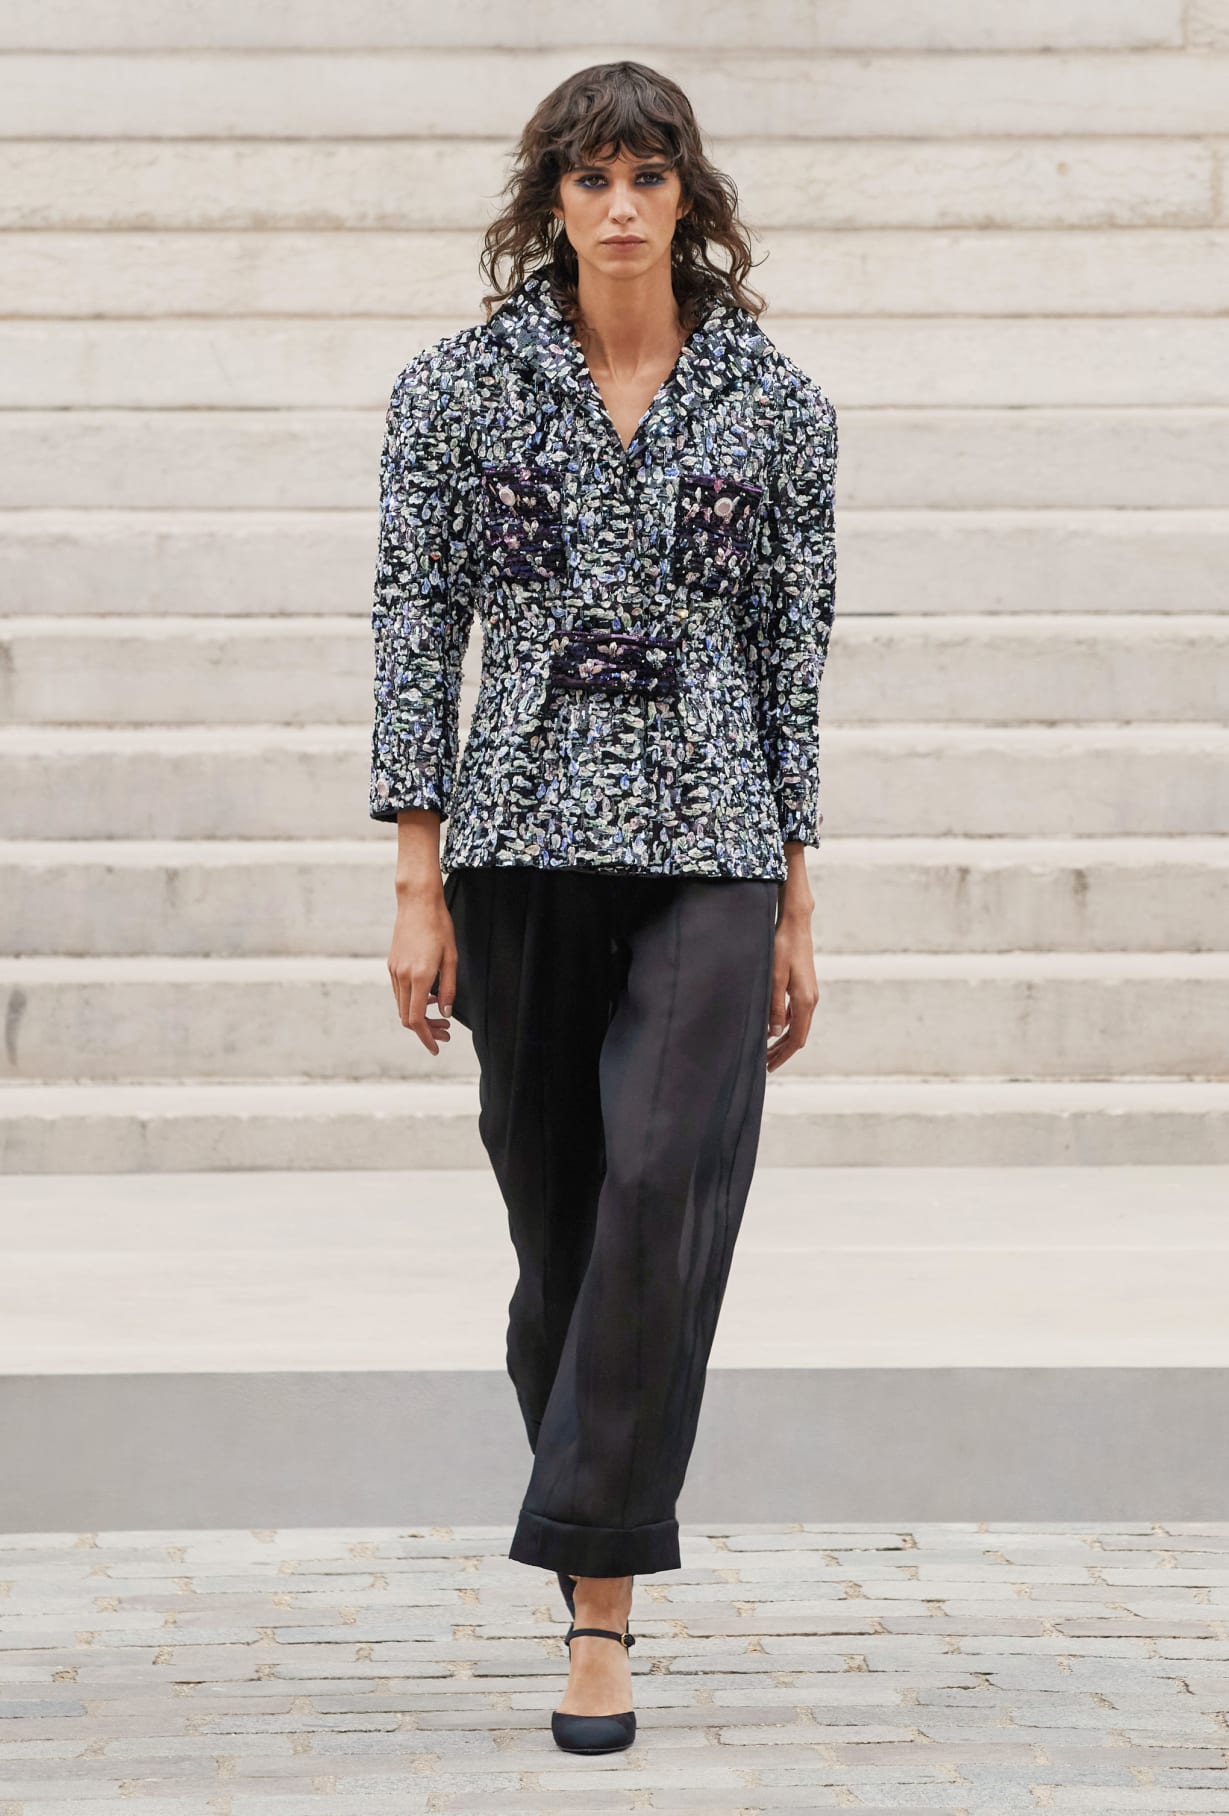 Chanel Haute Couture 2021: Sự tối giản của sàn diễn để tôn vinh trang phục  - Ảnh 16